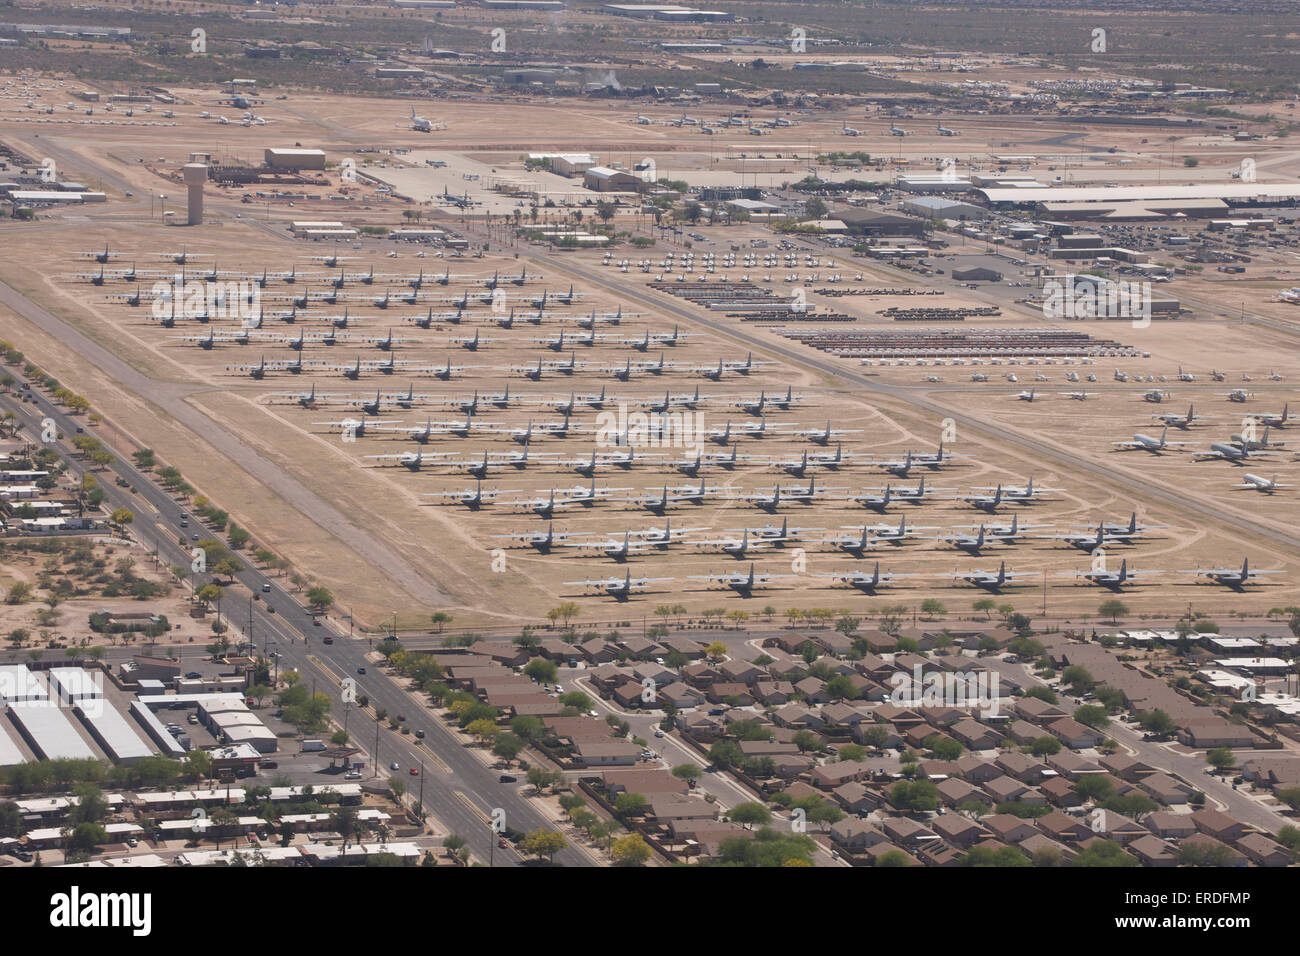 Davis-Monthan Air Force Base boneyard in Arizona. Stock Photo